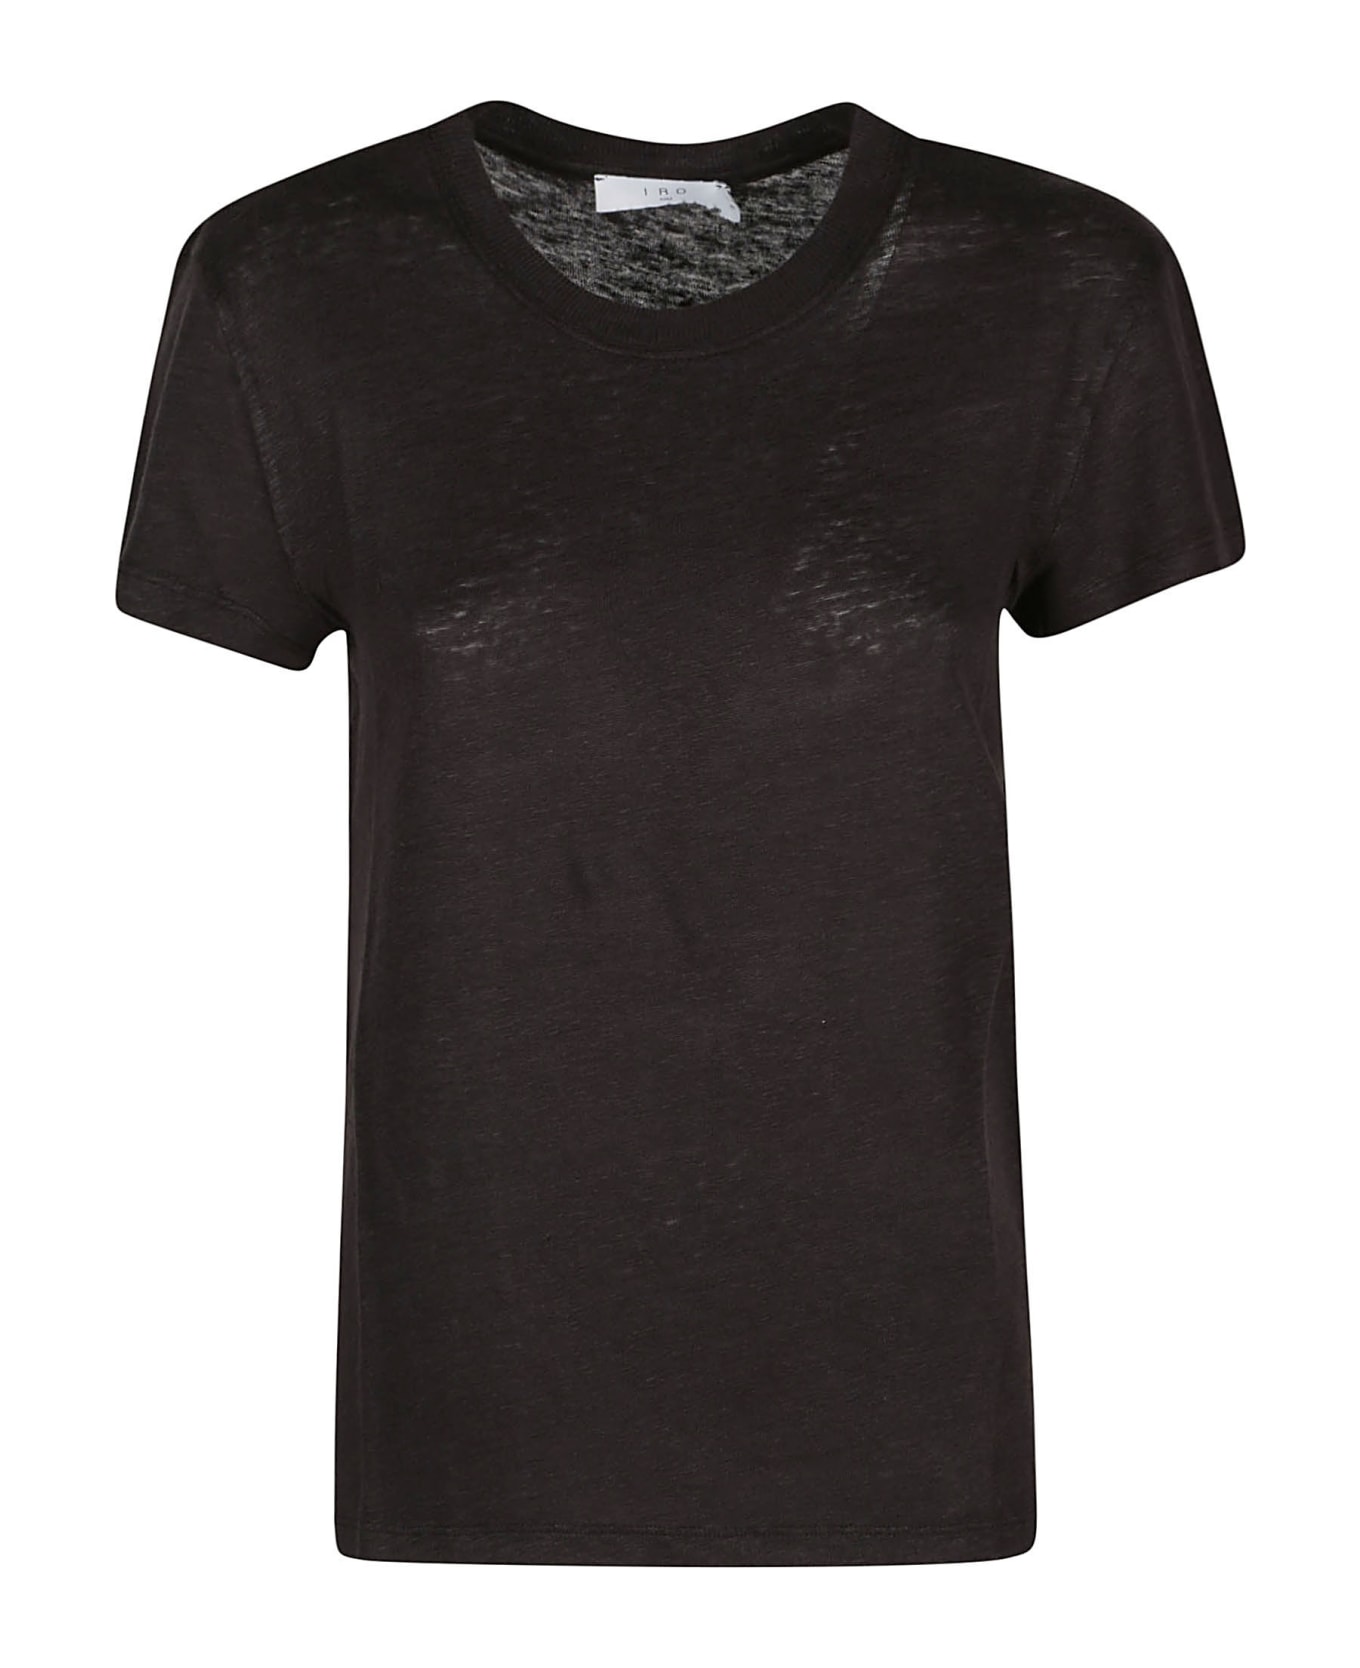 IRO Third T-shirt - Black